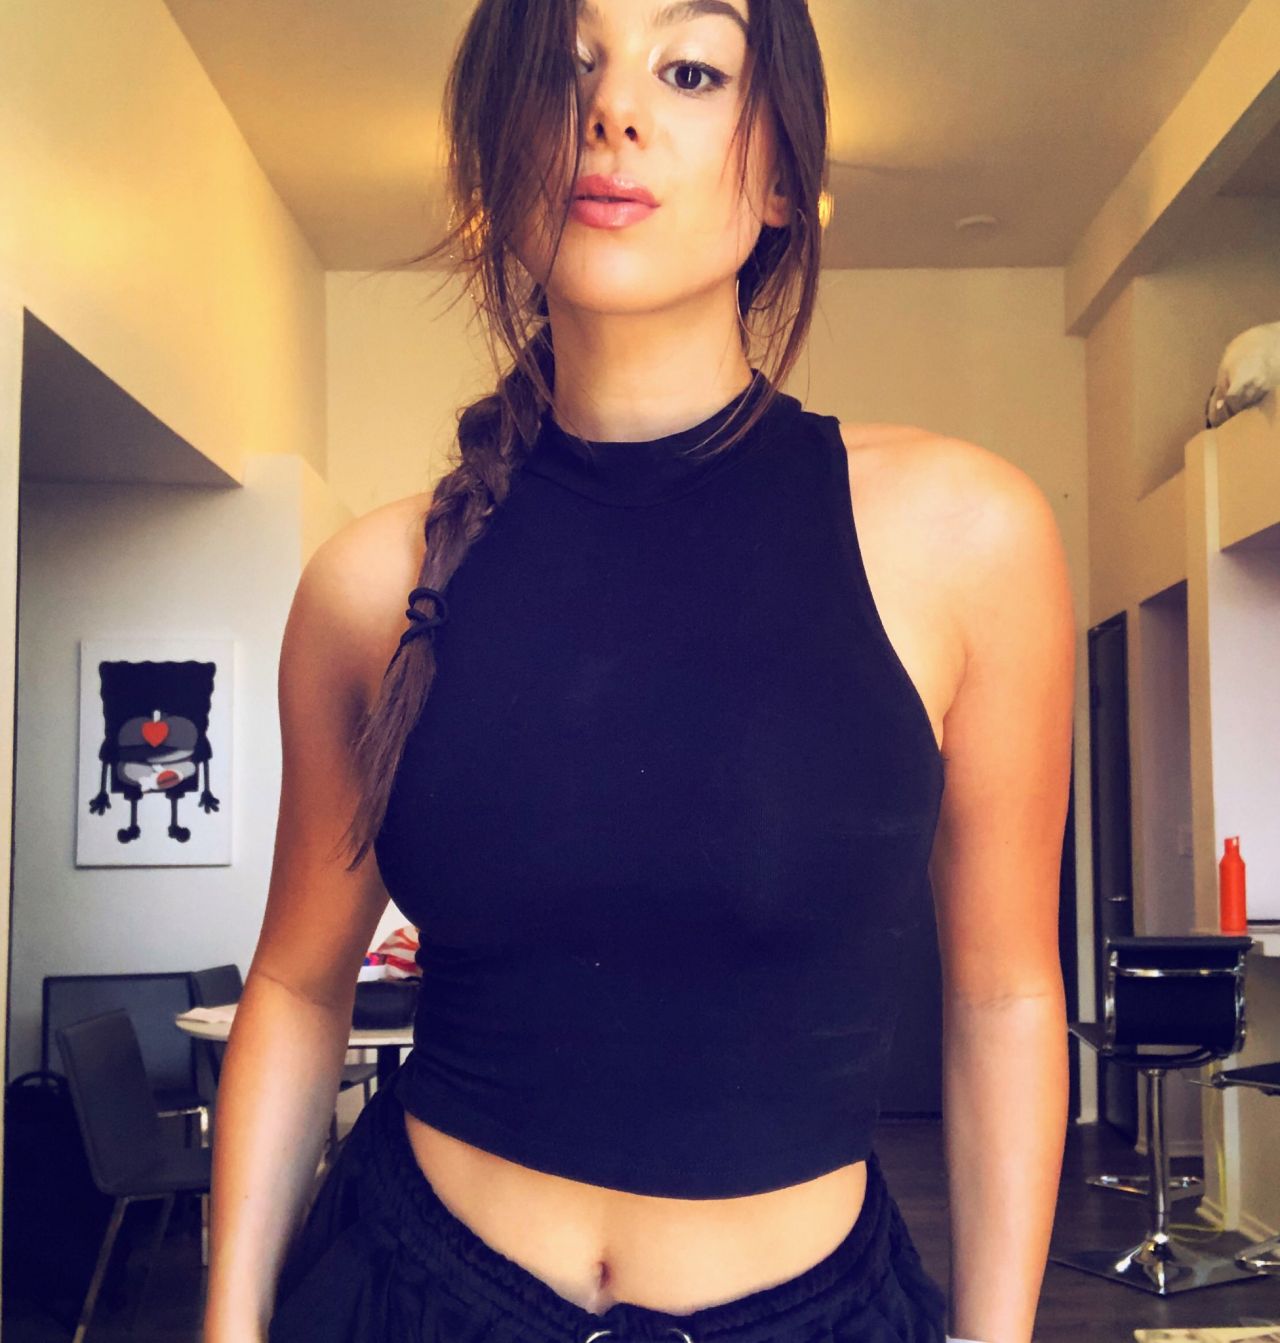 Kira Kosarin In Bikini Social Media 04 13 2018